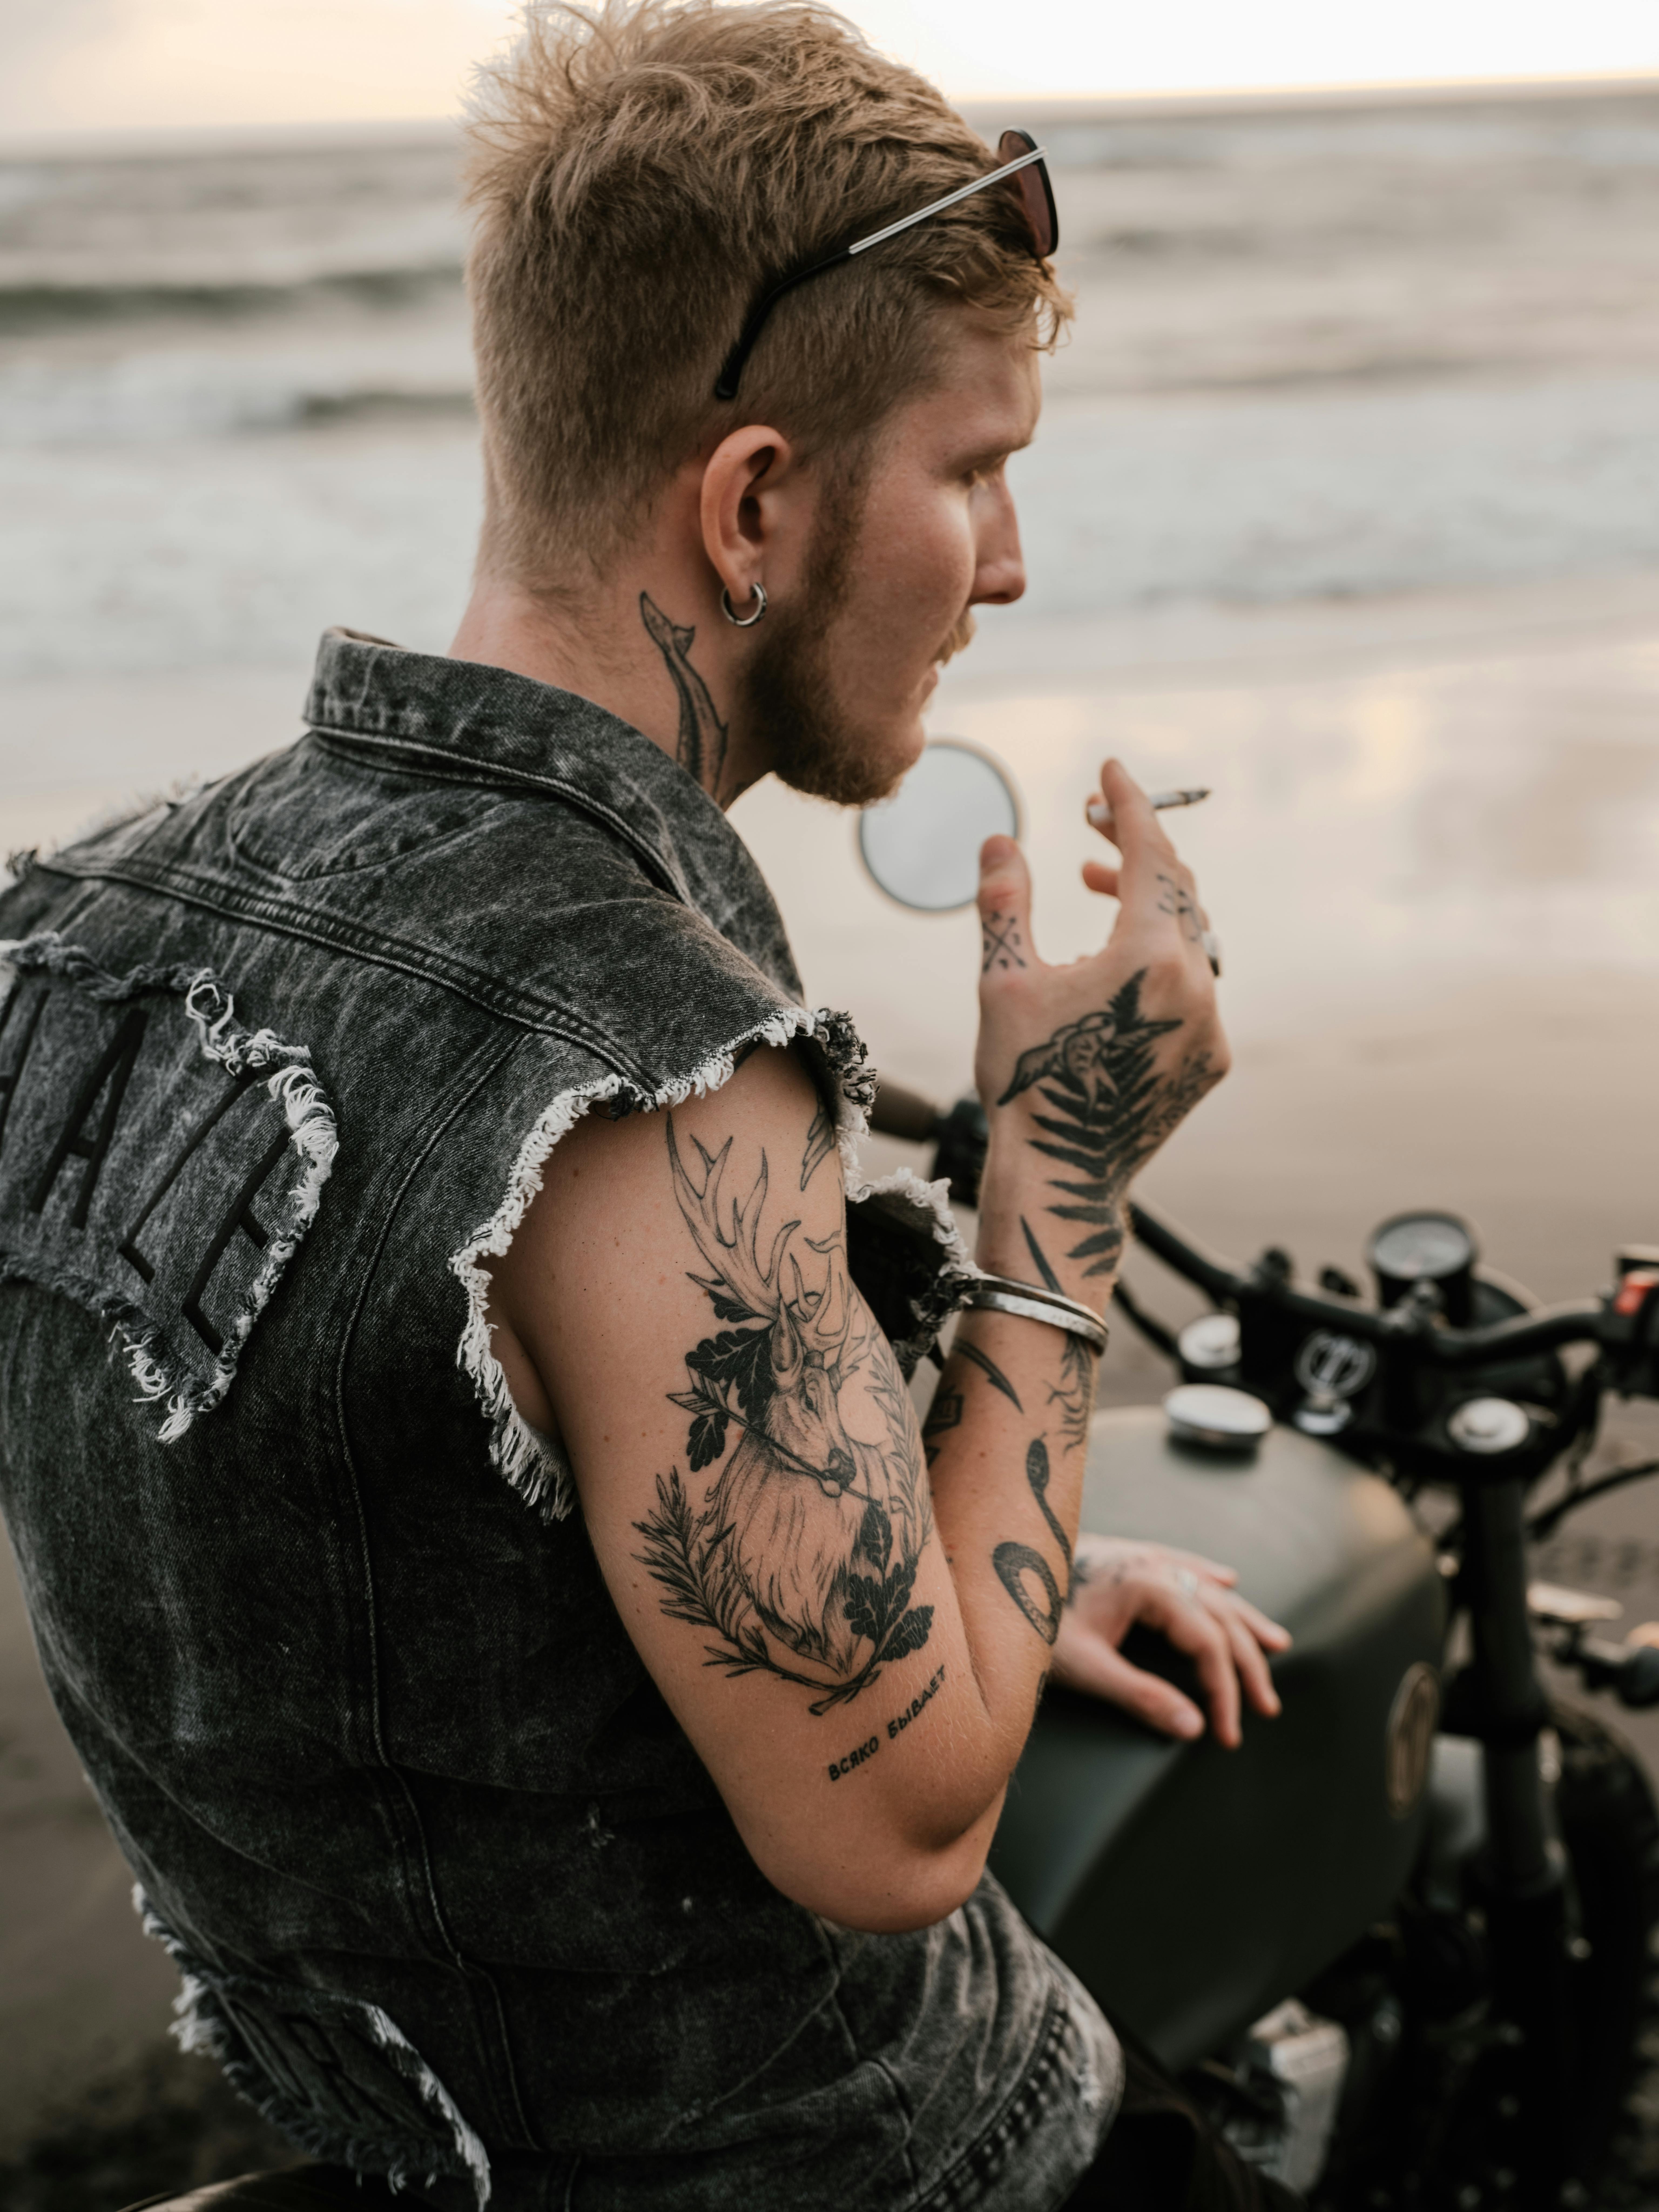 Biker Tattoo Ideas | Motorcycle tattoos, Harley tattoos, Biker tattoos